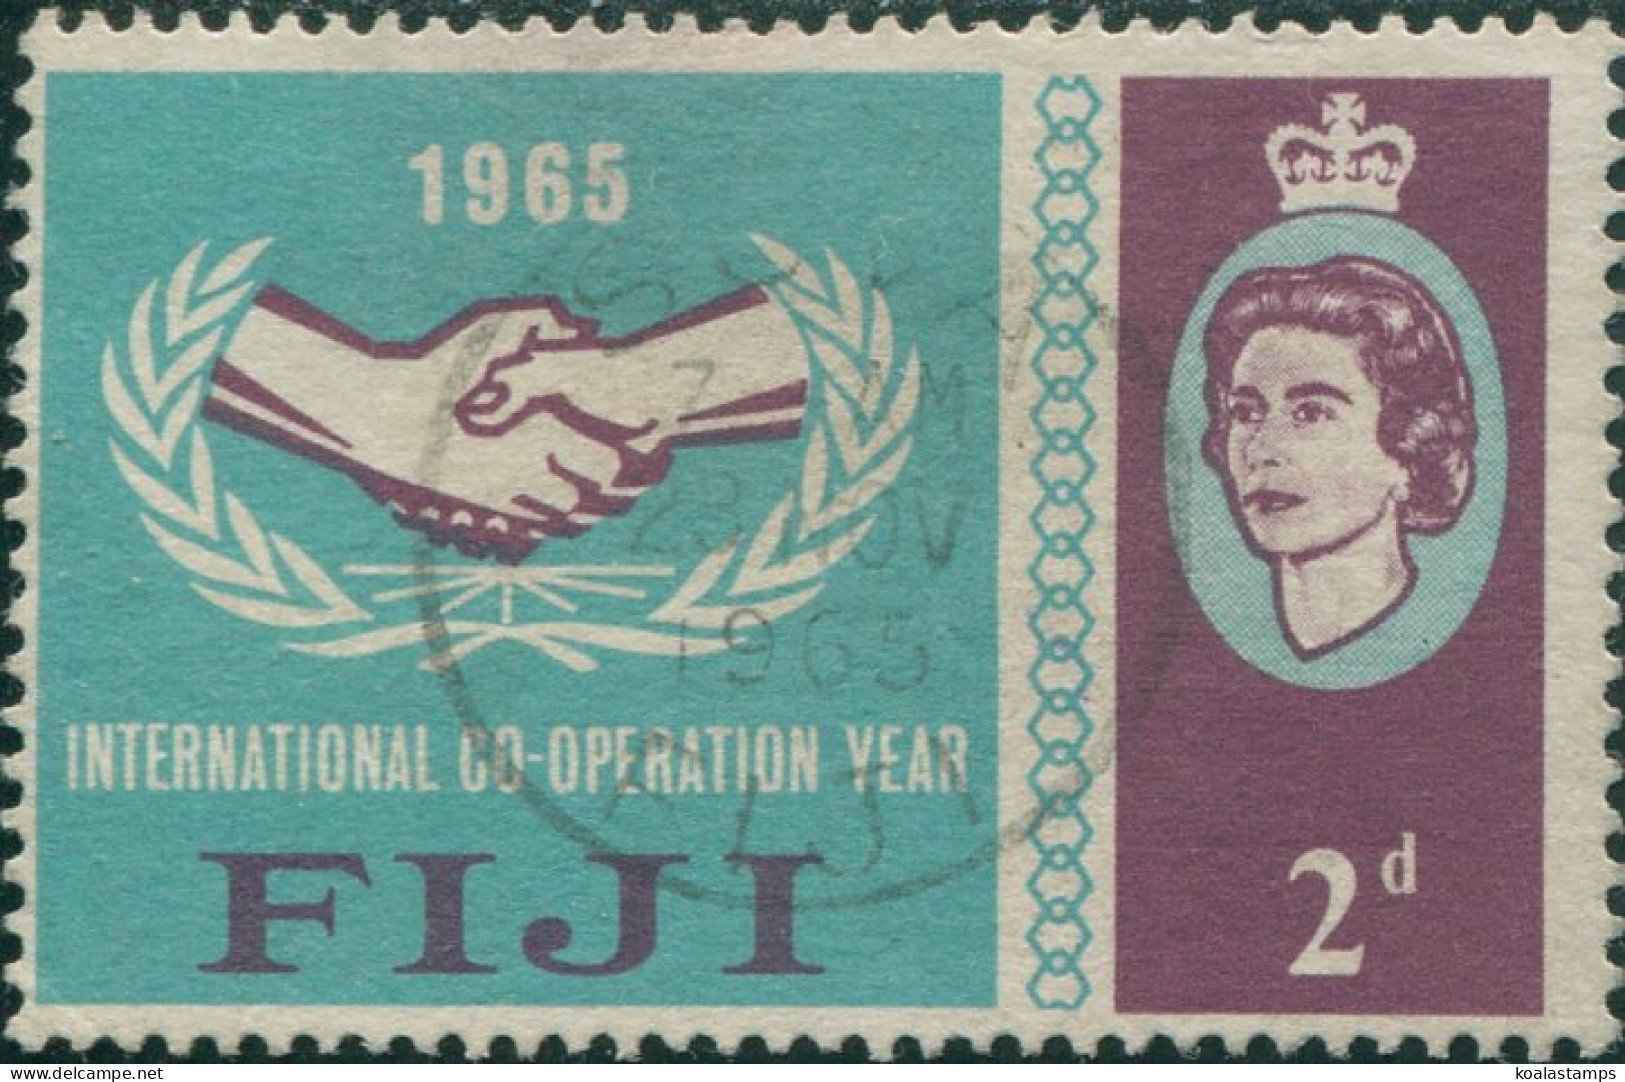 Fiji 1965 SG343 2d ICY Emblem QEII FU - Fiji (1970-...)